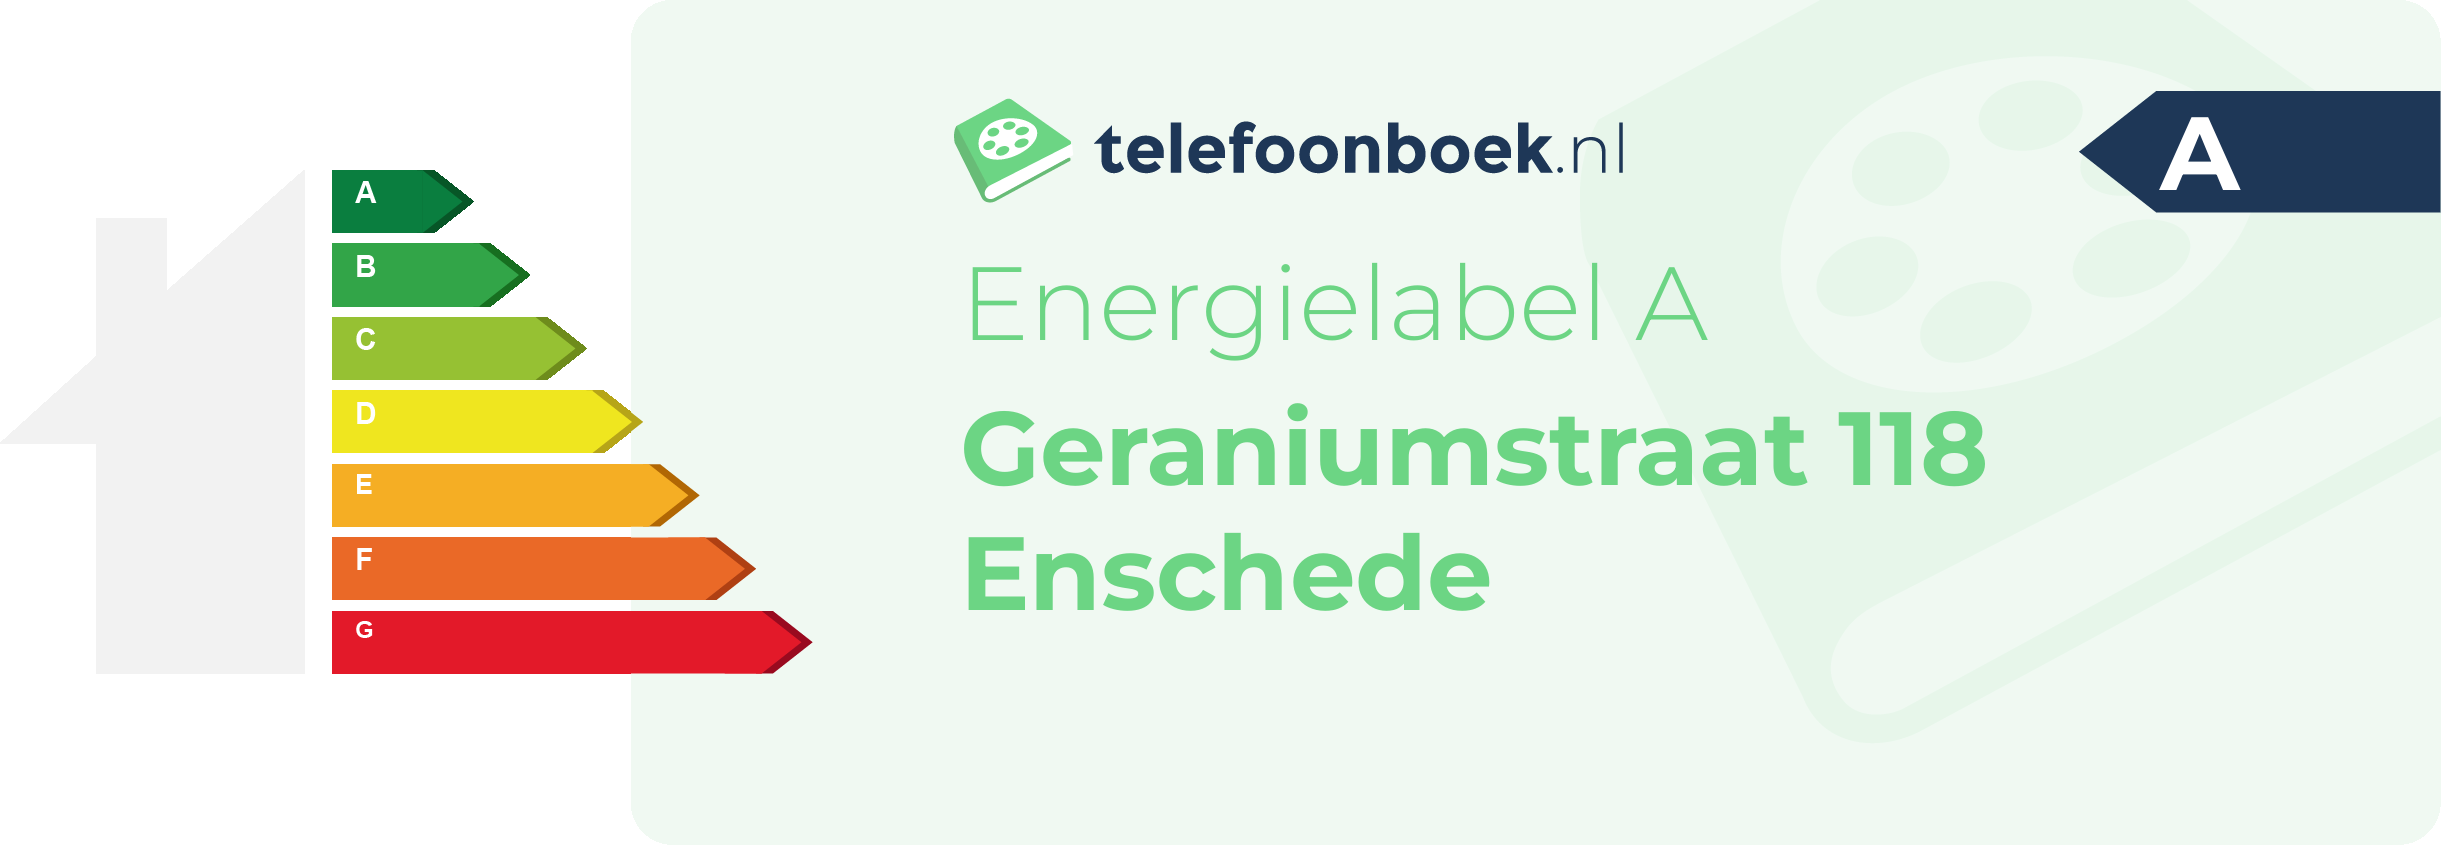 Energielabel Geraniumstraat 118 Enschede